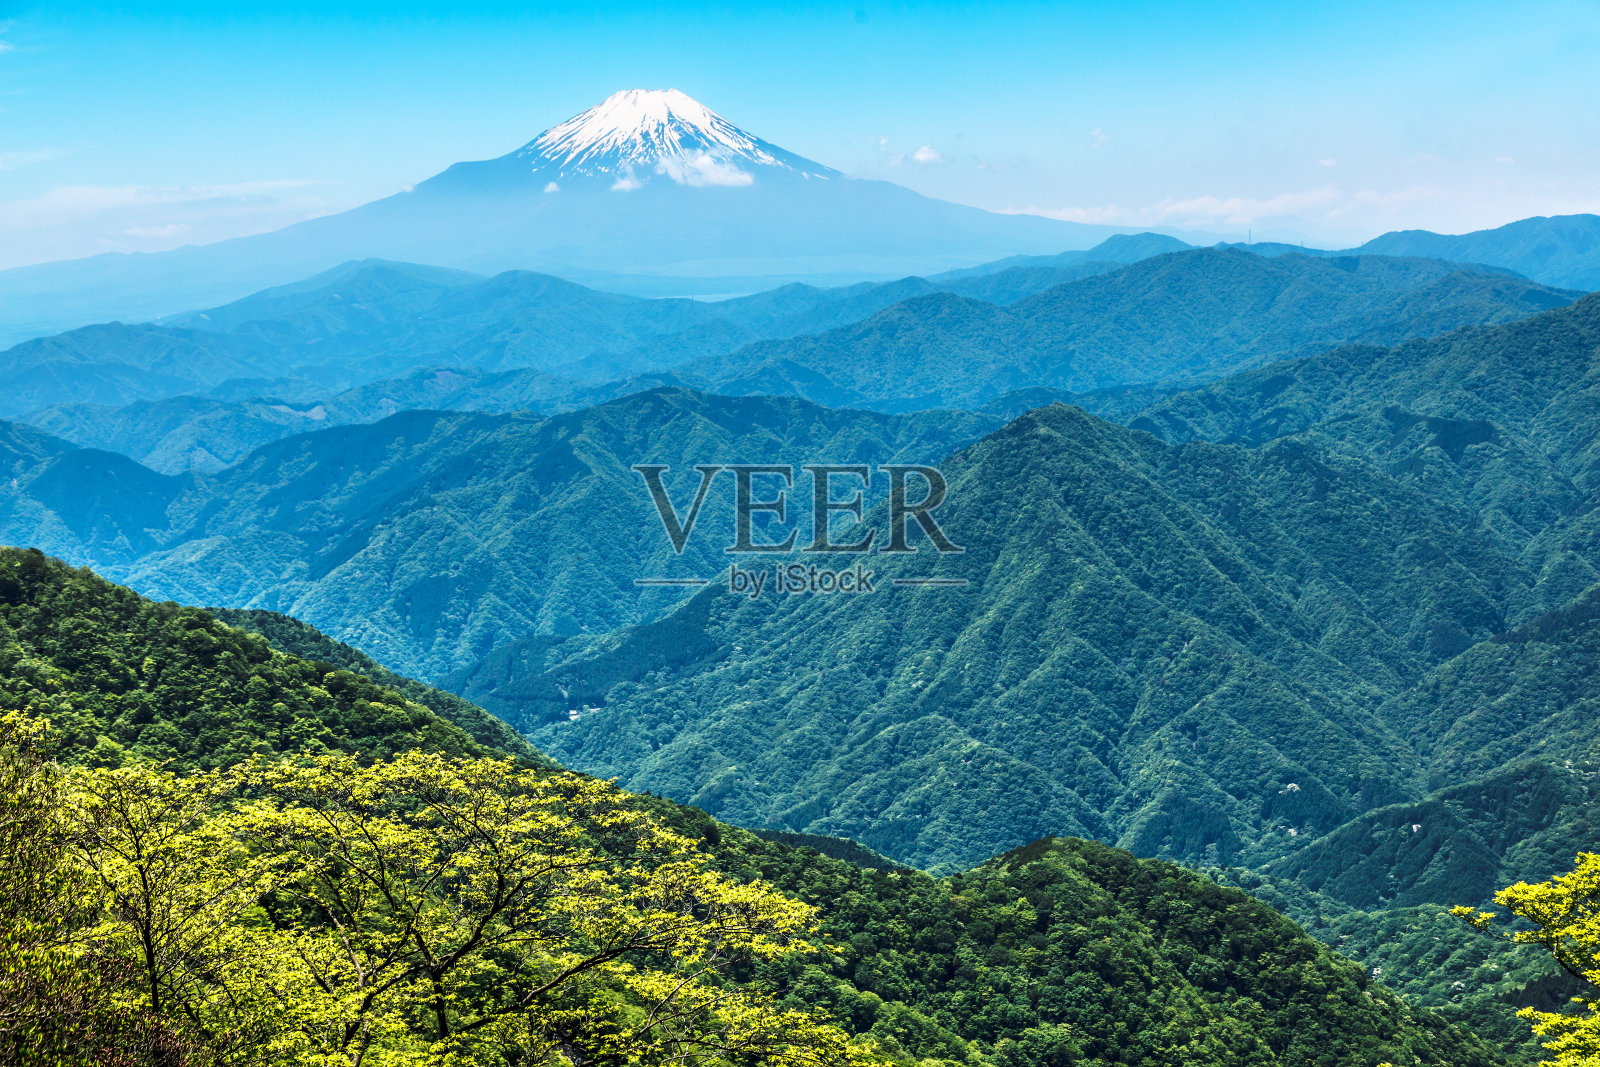 从西藤泽看到的富士山照片摄影图片